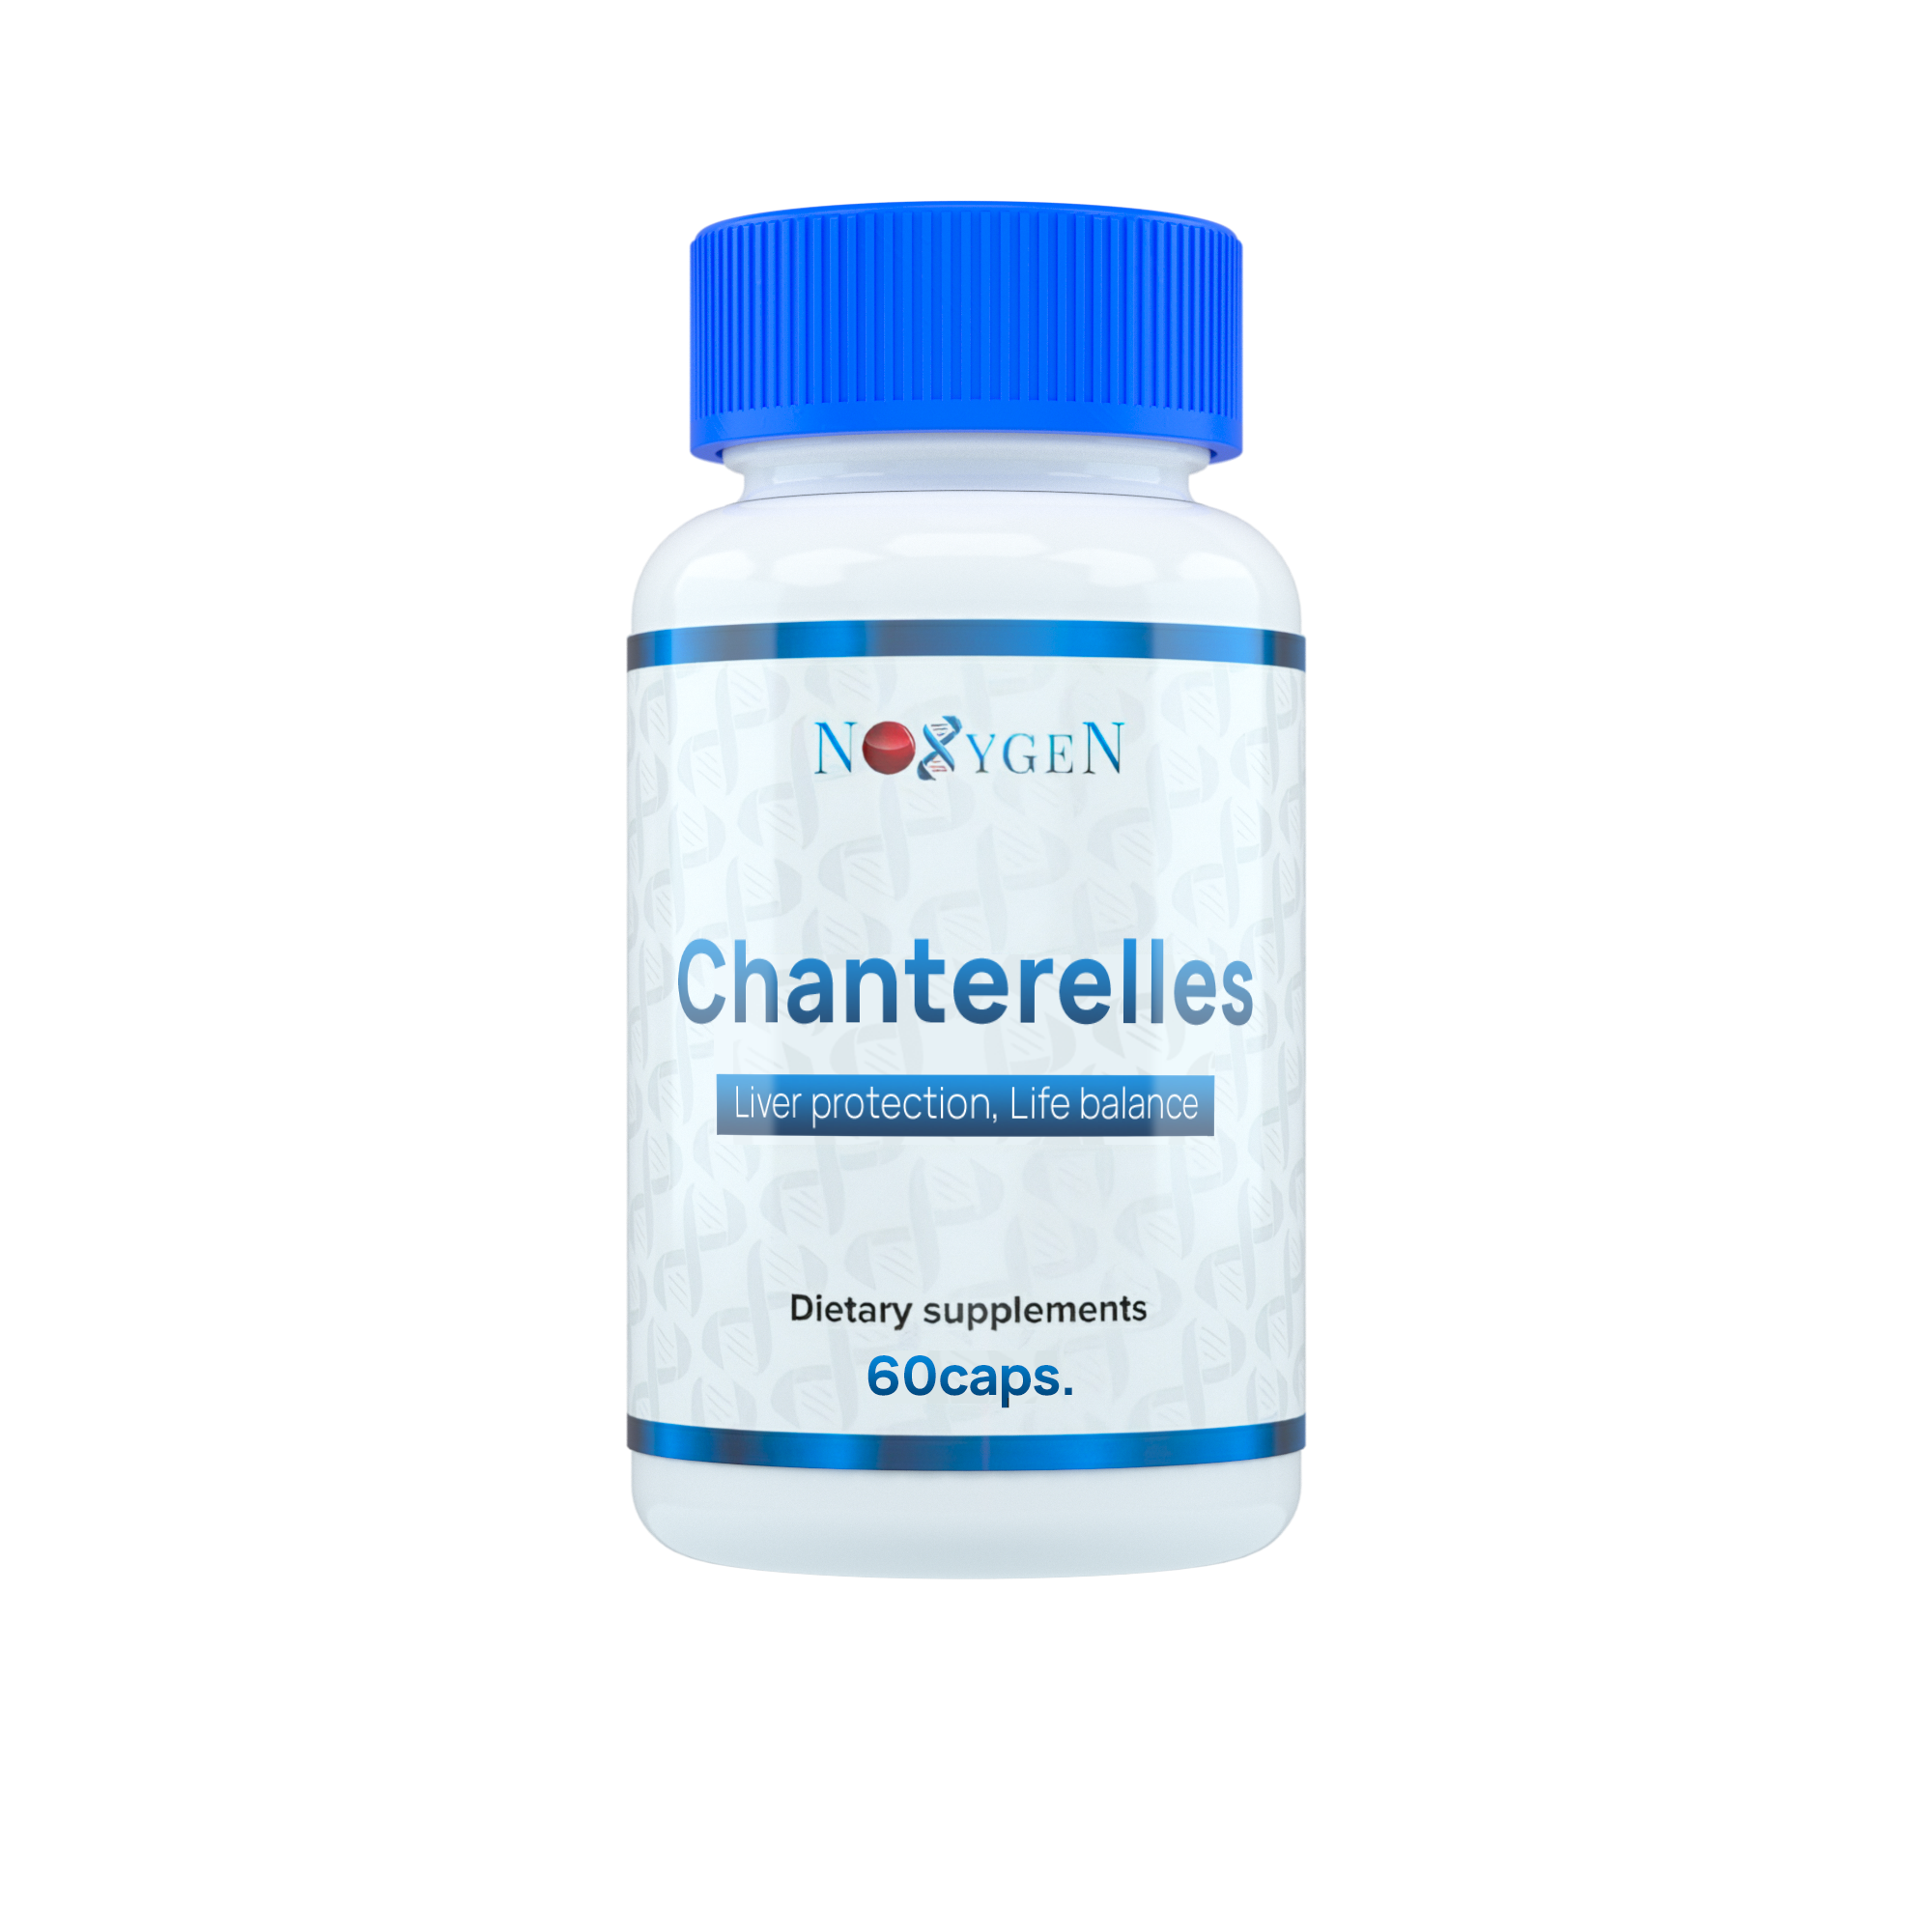 Noxygen Chanterelles 60капс. - экстракт лисичек для укрепления иммунитета, восстановления печени, улучшение зрения, против паразитов